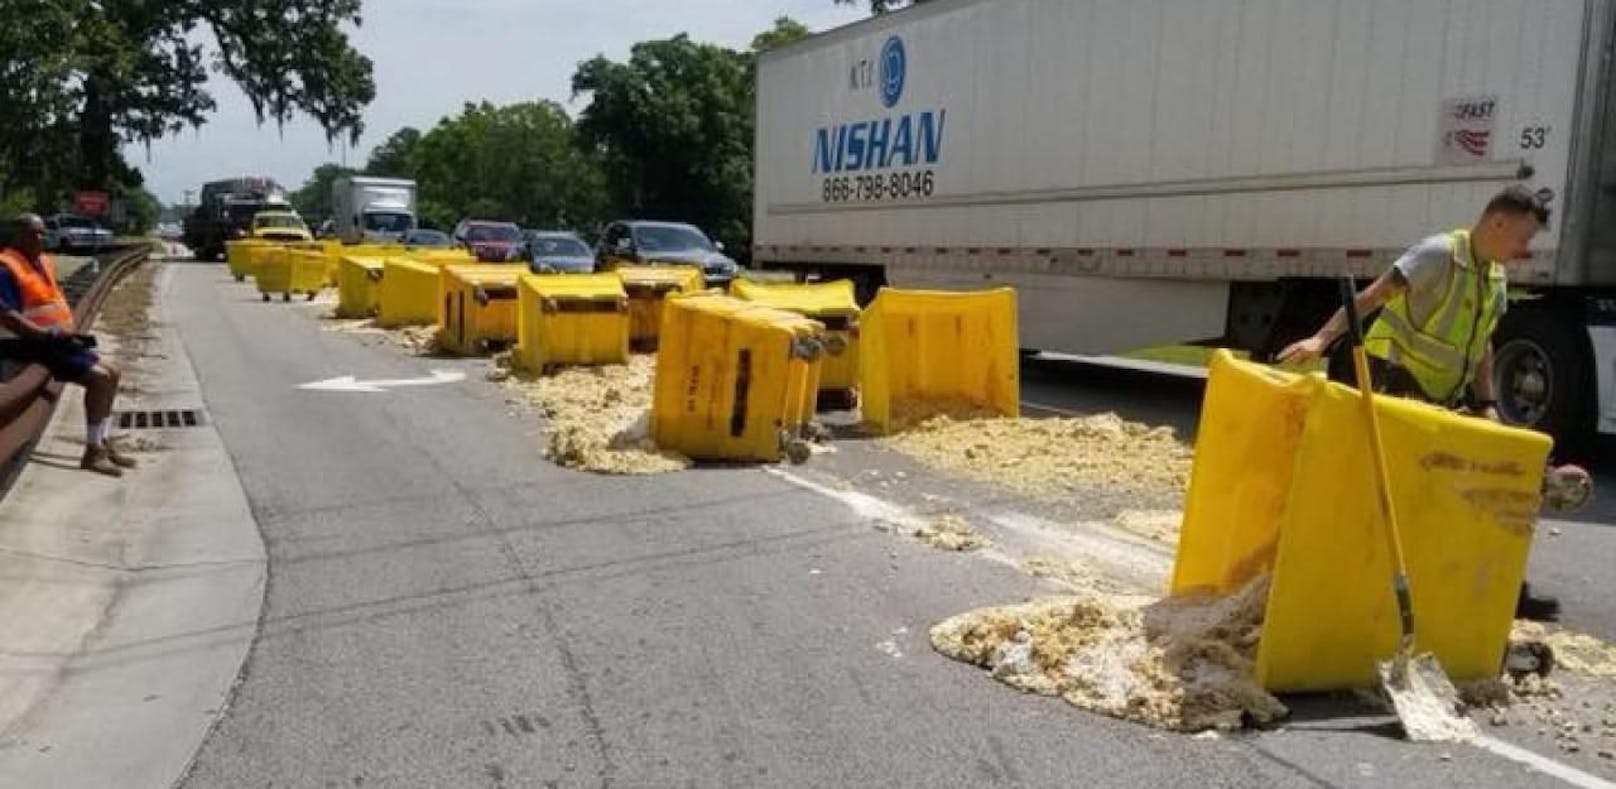 Bei einem Unfall verlor ein Lkw mehrere Behälter, deren Inhalt - Keks-Teig - ergoss sich auf die Straße